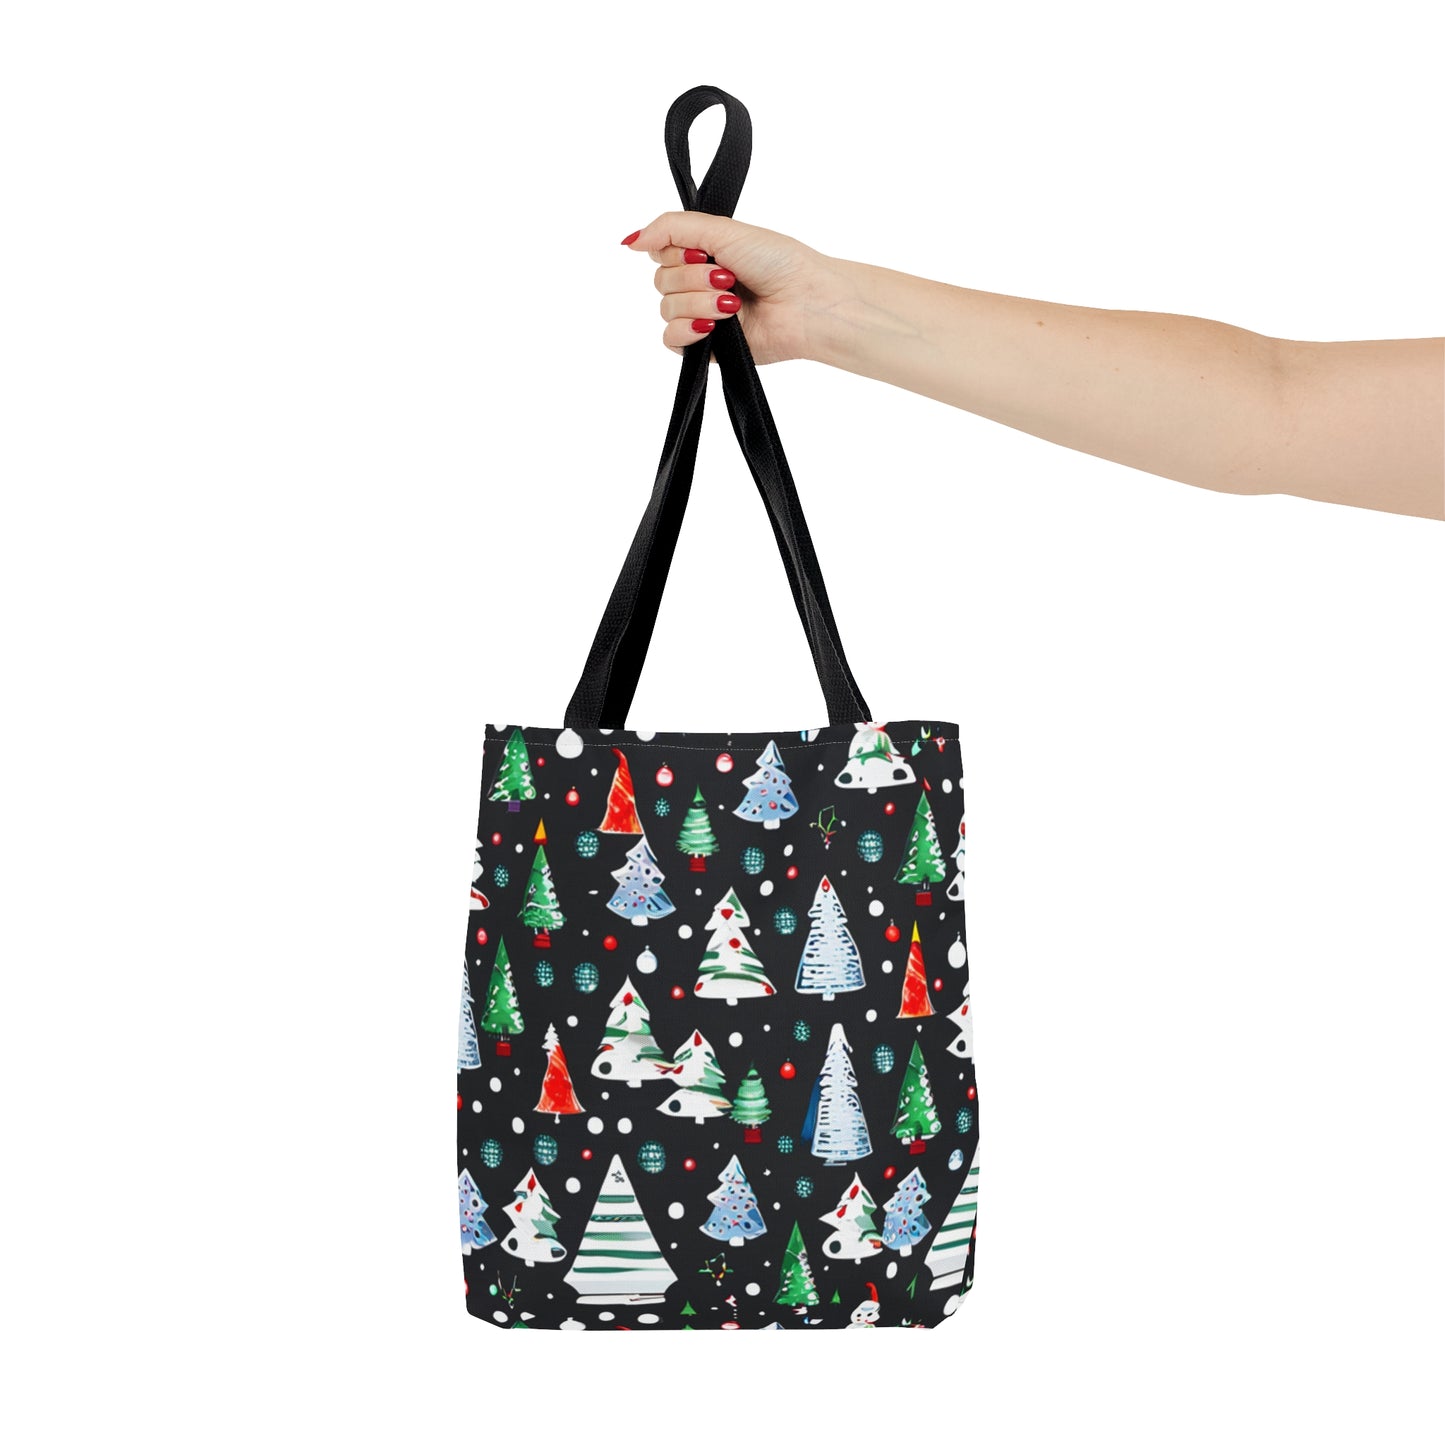 Colorful Christmas Tree Tote Bag